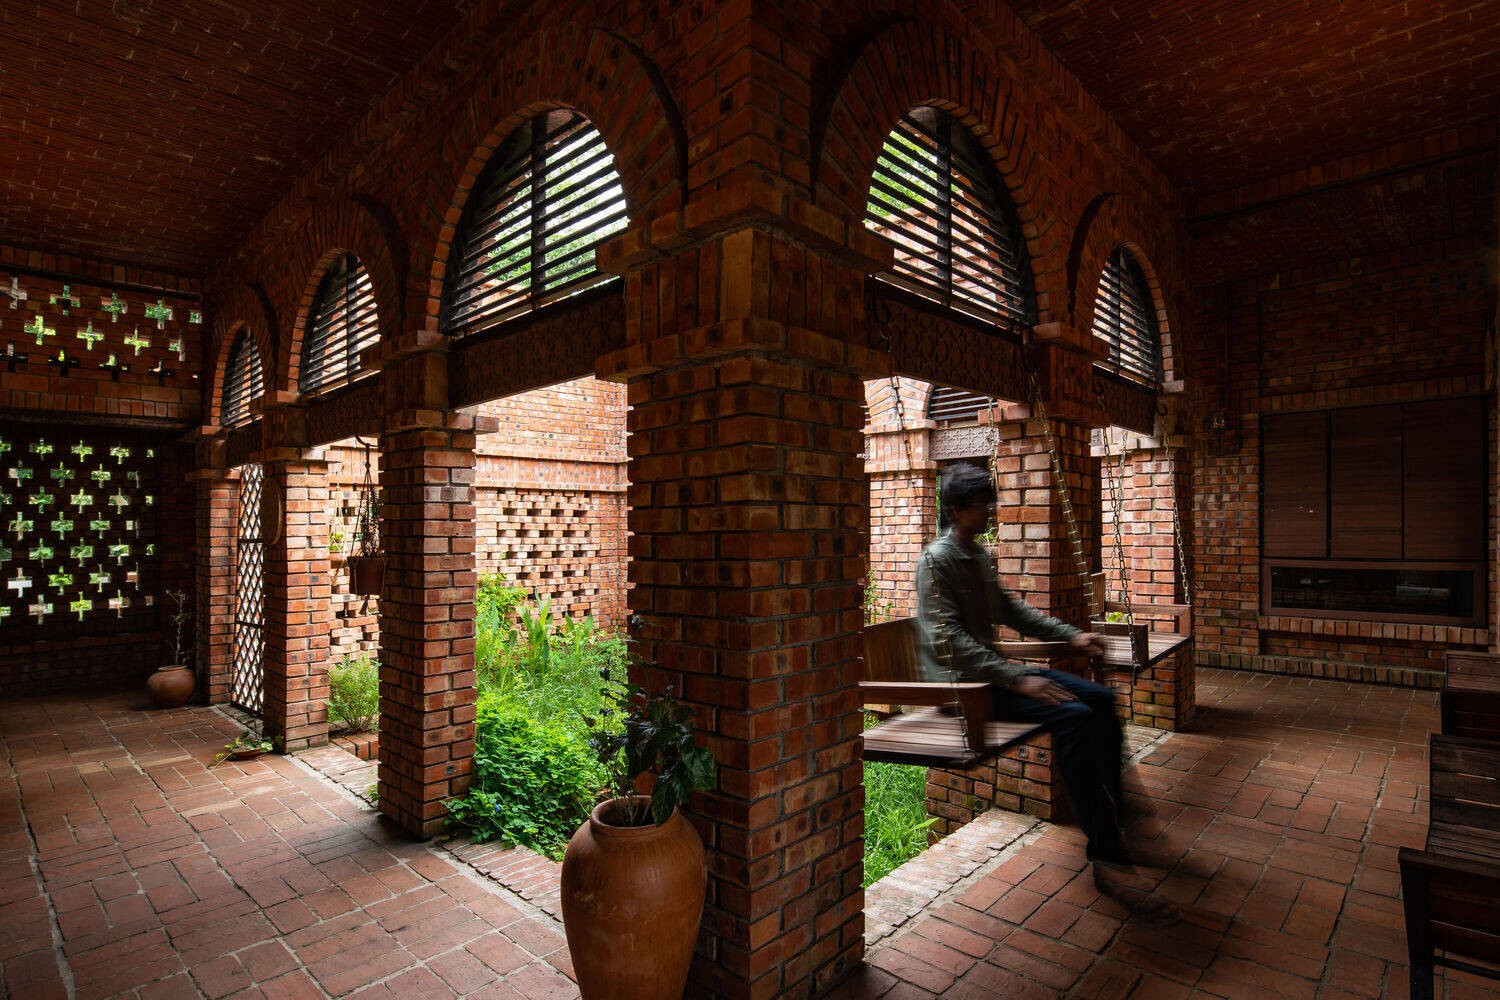 
Khung cửa nơi kết nối với sân vườn được tận dụng để làm xích đu, thích hợp cho gia chủ nghỉ ngơi thư giãn
